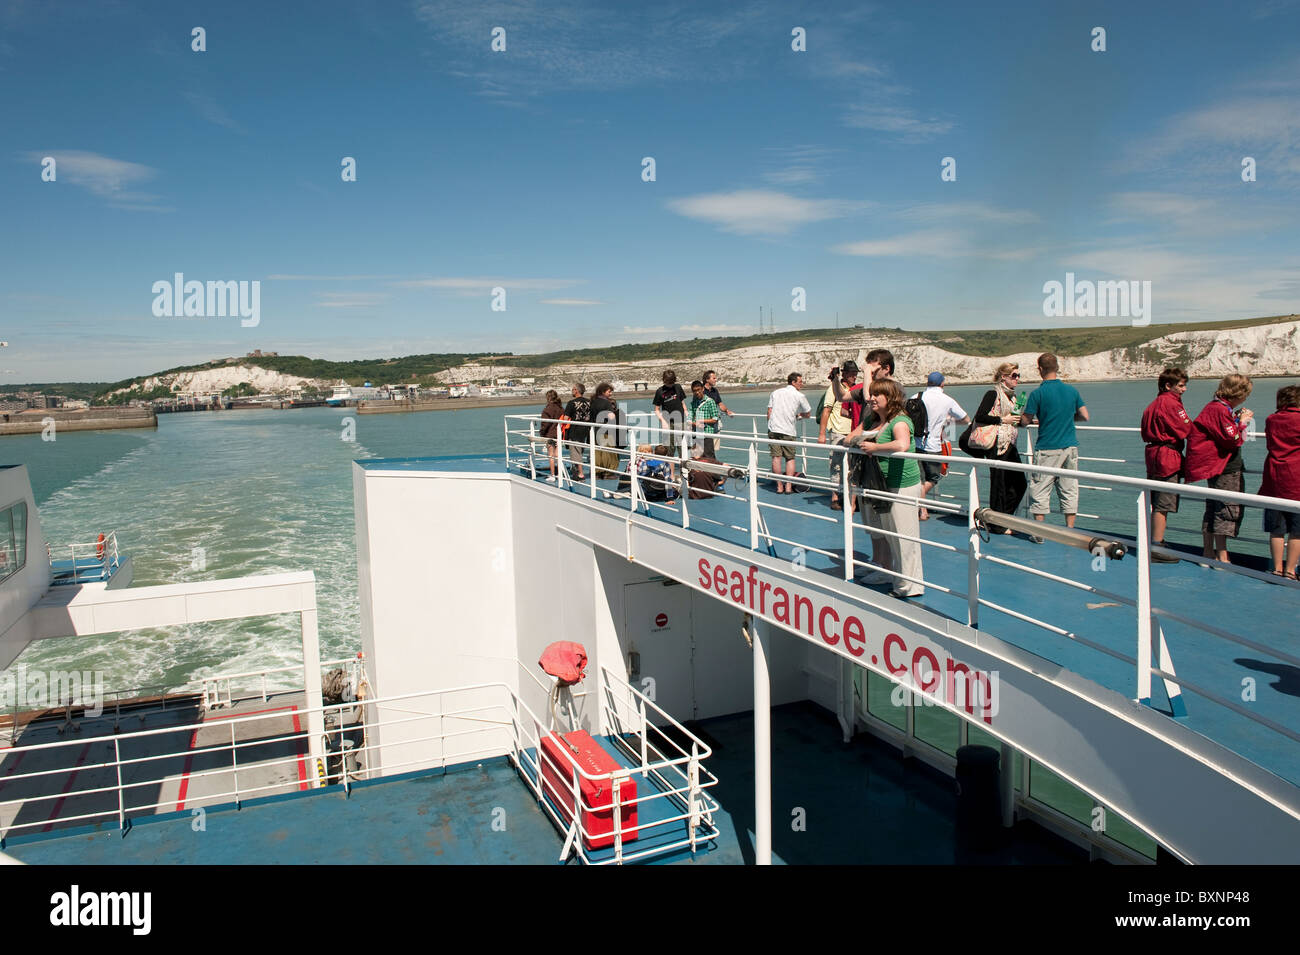 La gente sul traghetto Seafrance a Dover Foto Stock